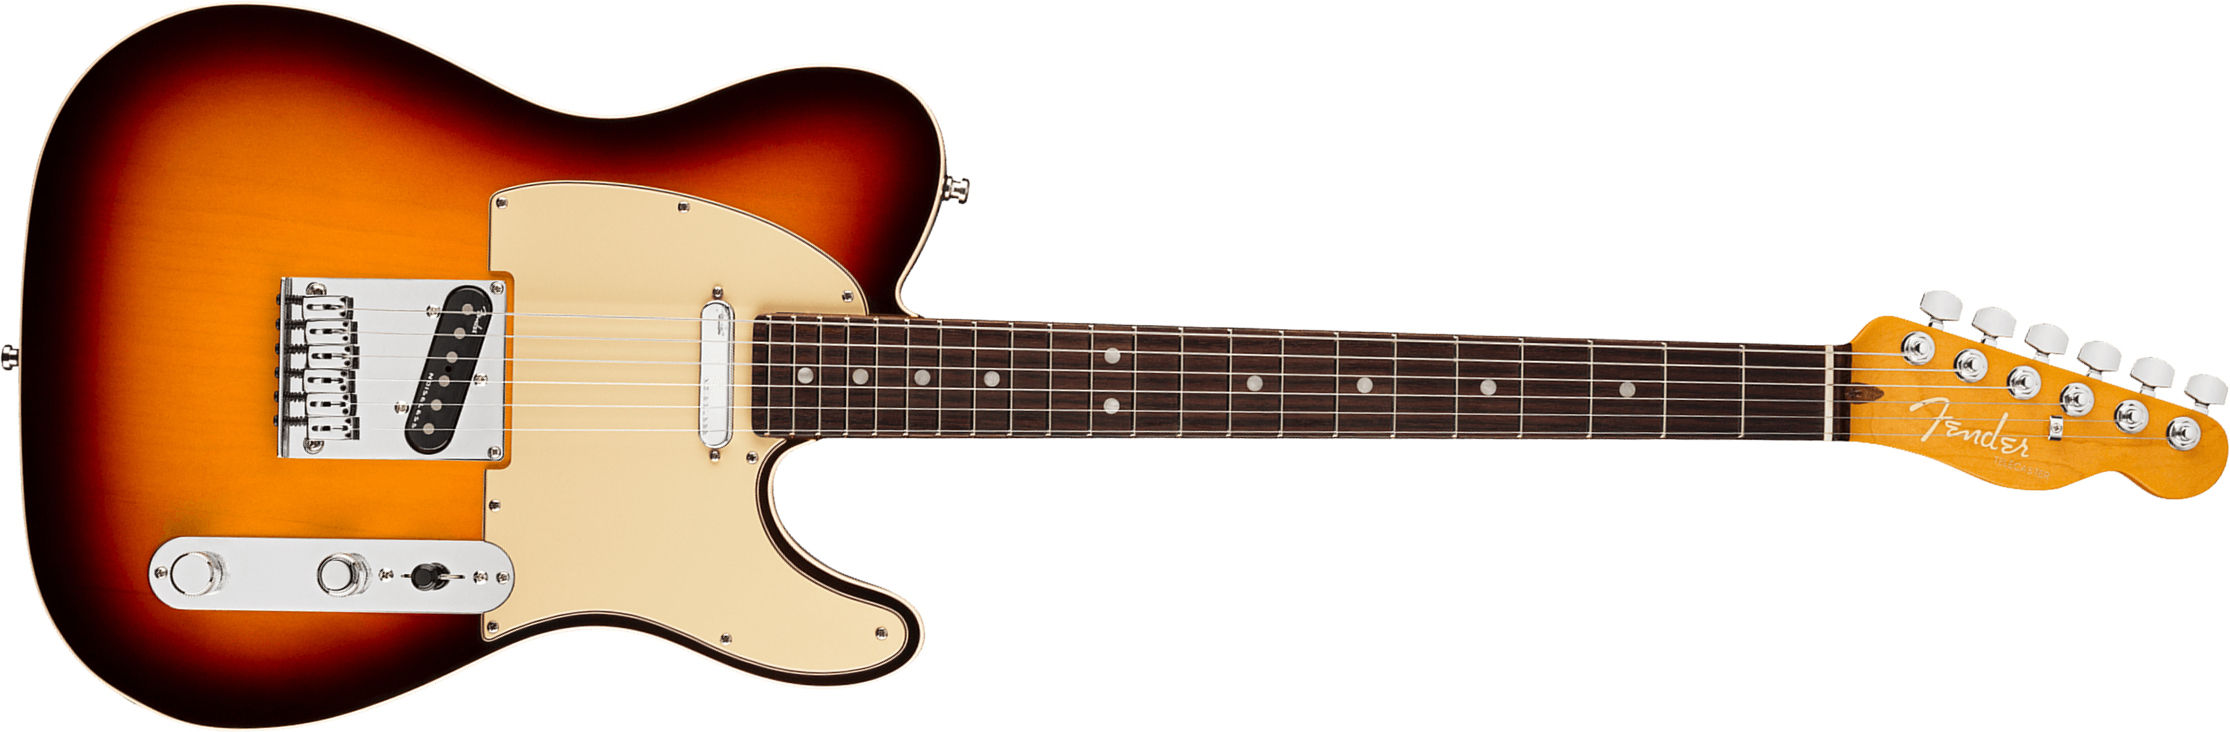 Fender Tele American Ultra 2019 Usa Rw - Ultraburst - E-Gitarre in Teleform - Main picture